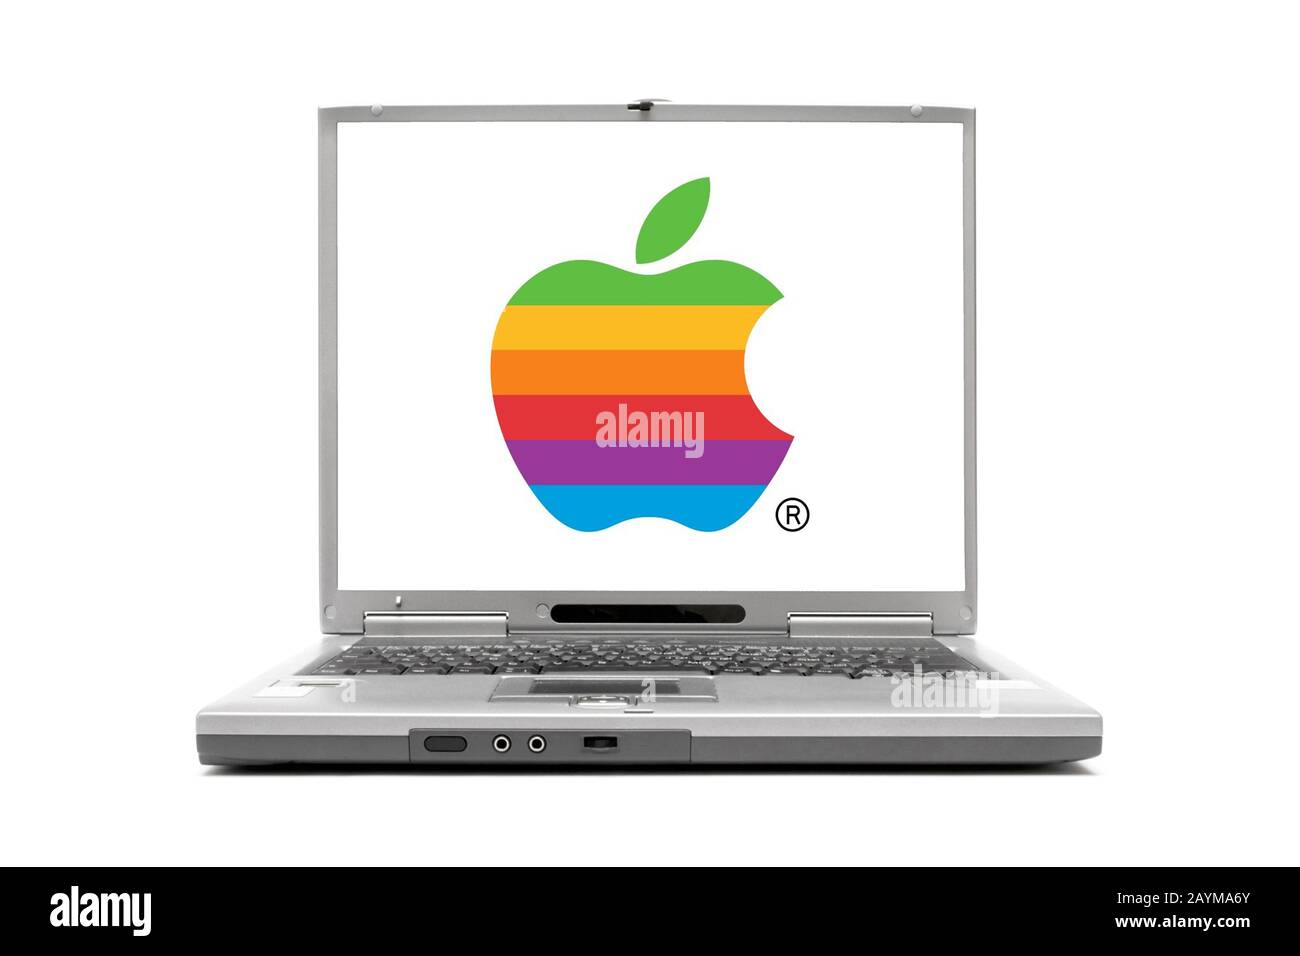 Logo táo là biểu tượng của một thương hiệu danh tiếng và sang trọng - Apple. Hãy xem hình ảnh logo này để tìm hiểu thêm về sản phẩm và triết lý kinh doanh của Apple, và hiểu sâu hơn về thế giới công nghệ hiện đại!